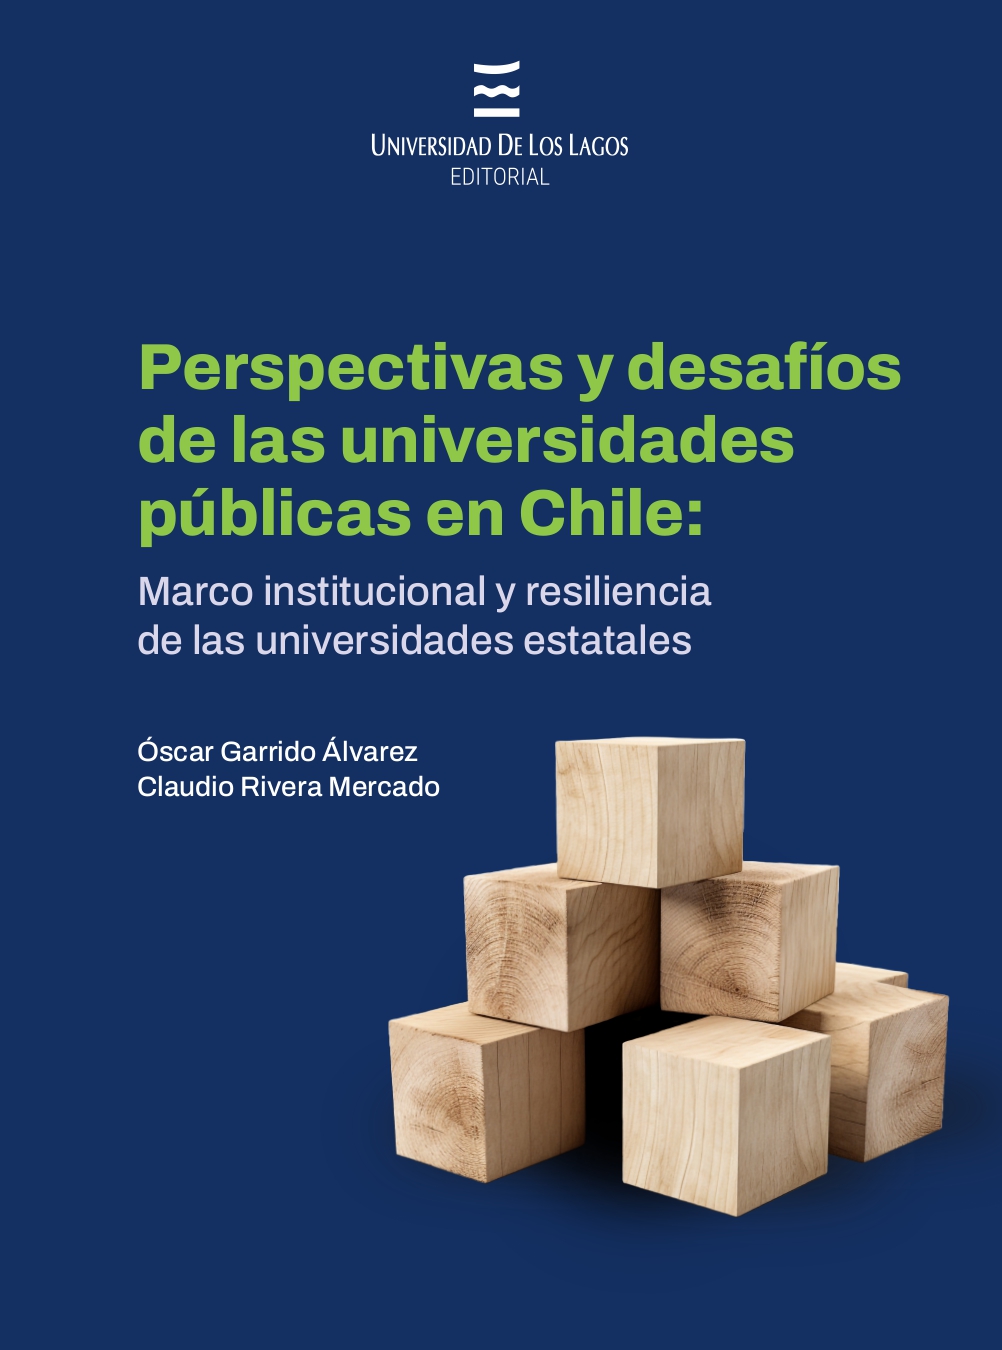 Imagen de portada del libro Perspectivas y desafíos de las universidades públicas en Chile